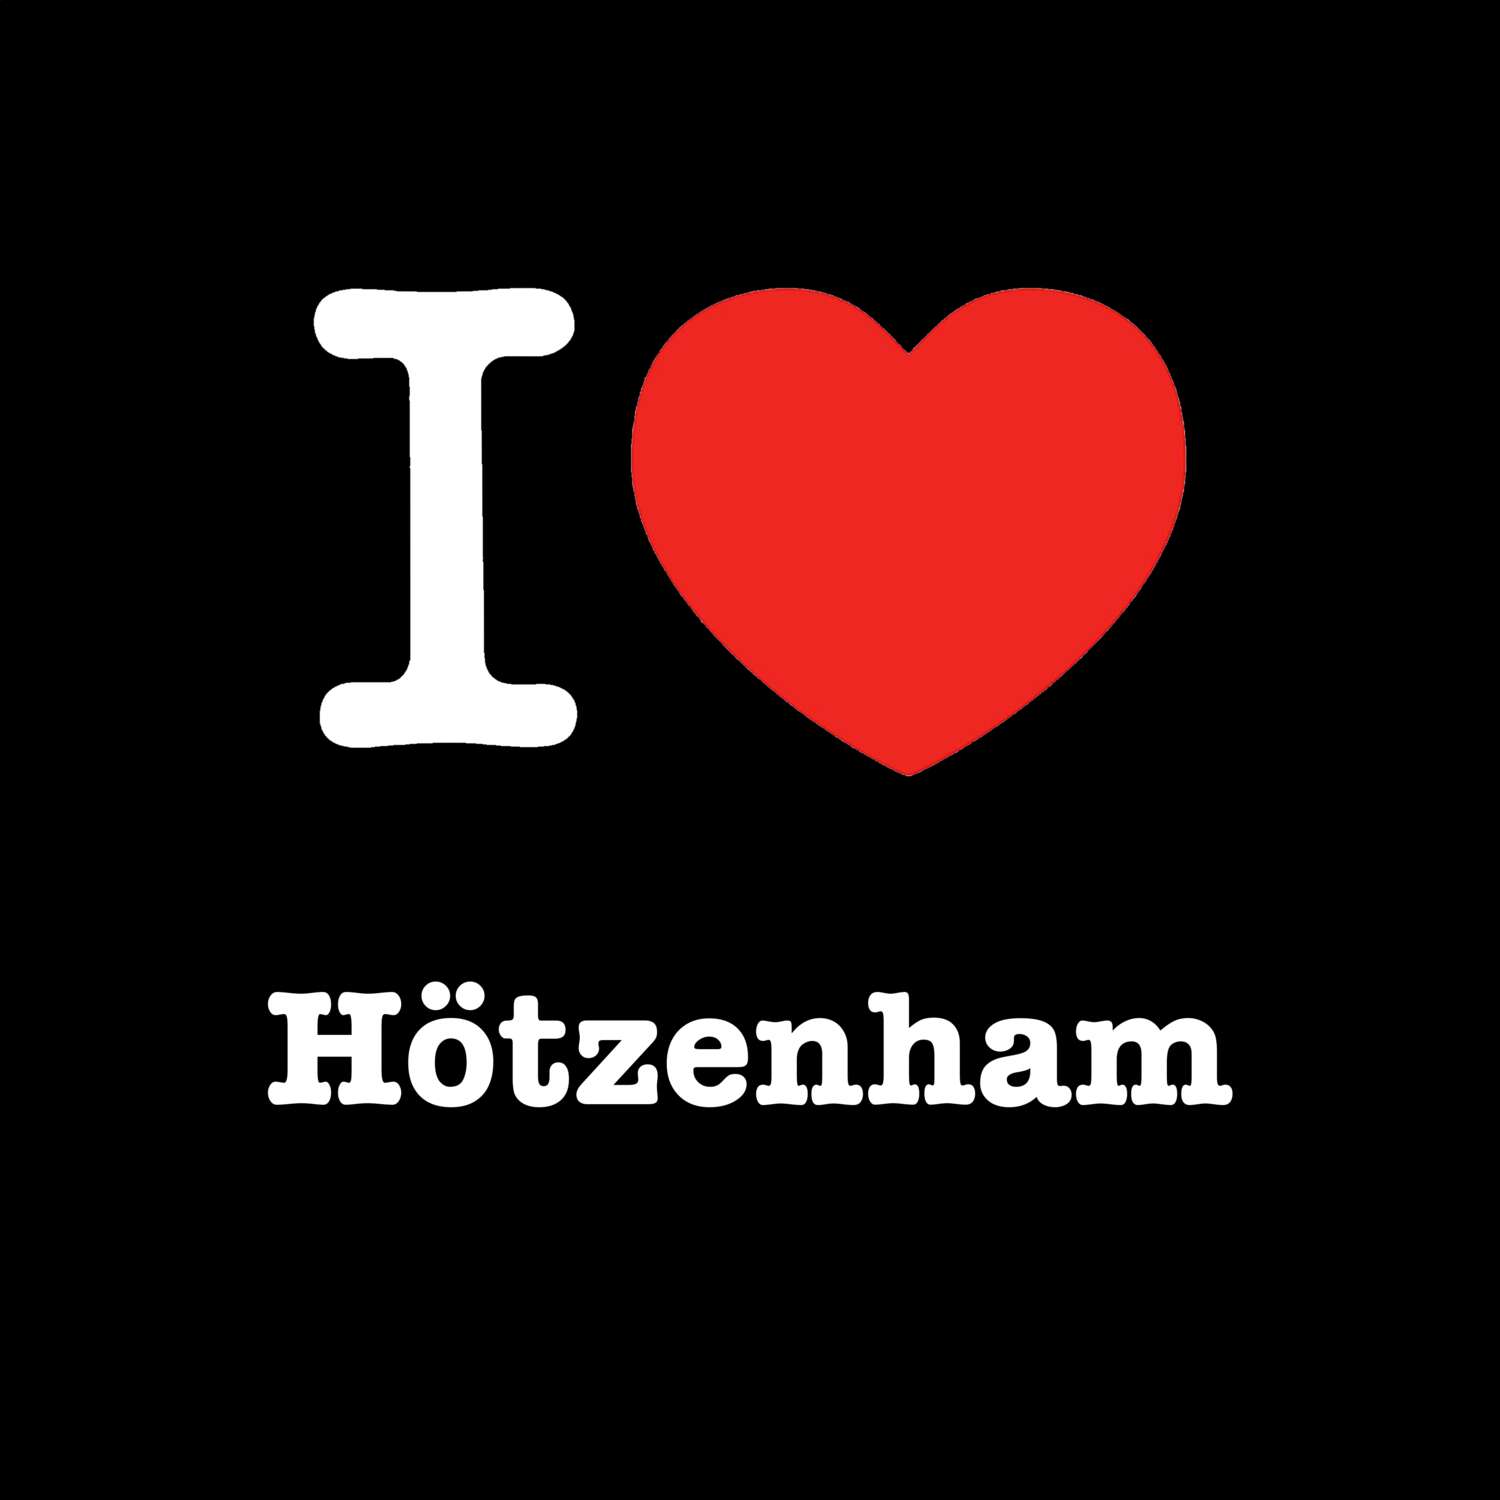 Hötzenham T-Shirt »I love«